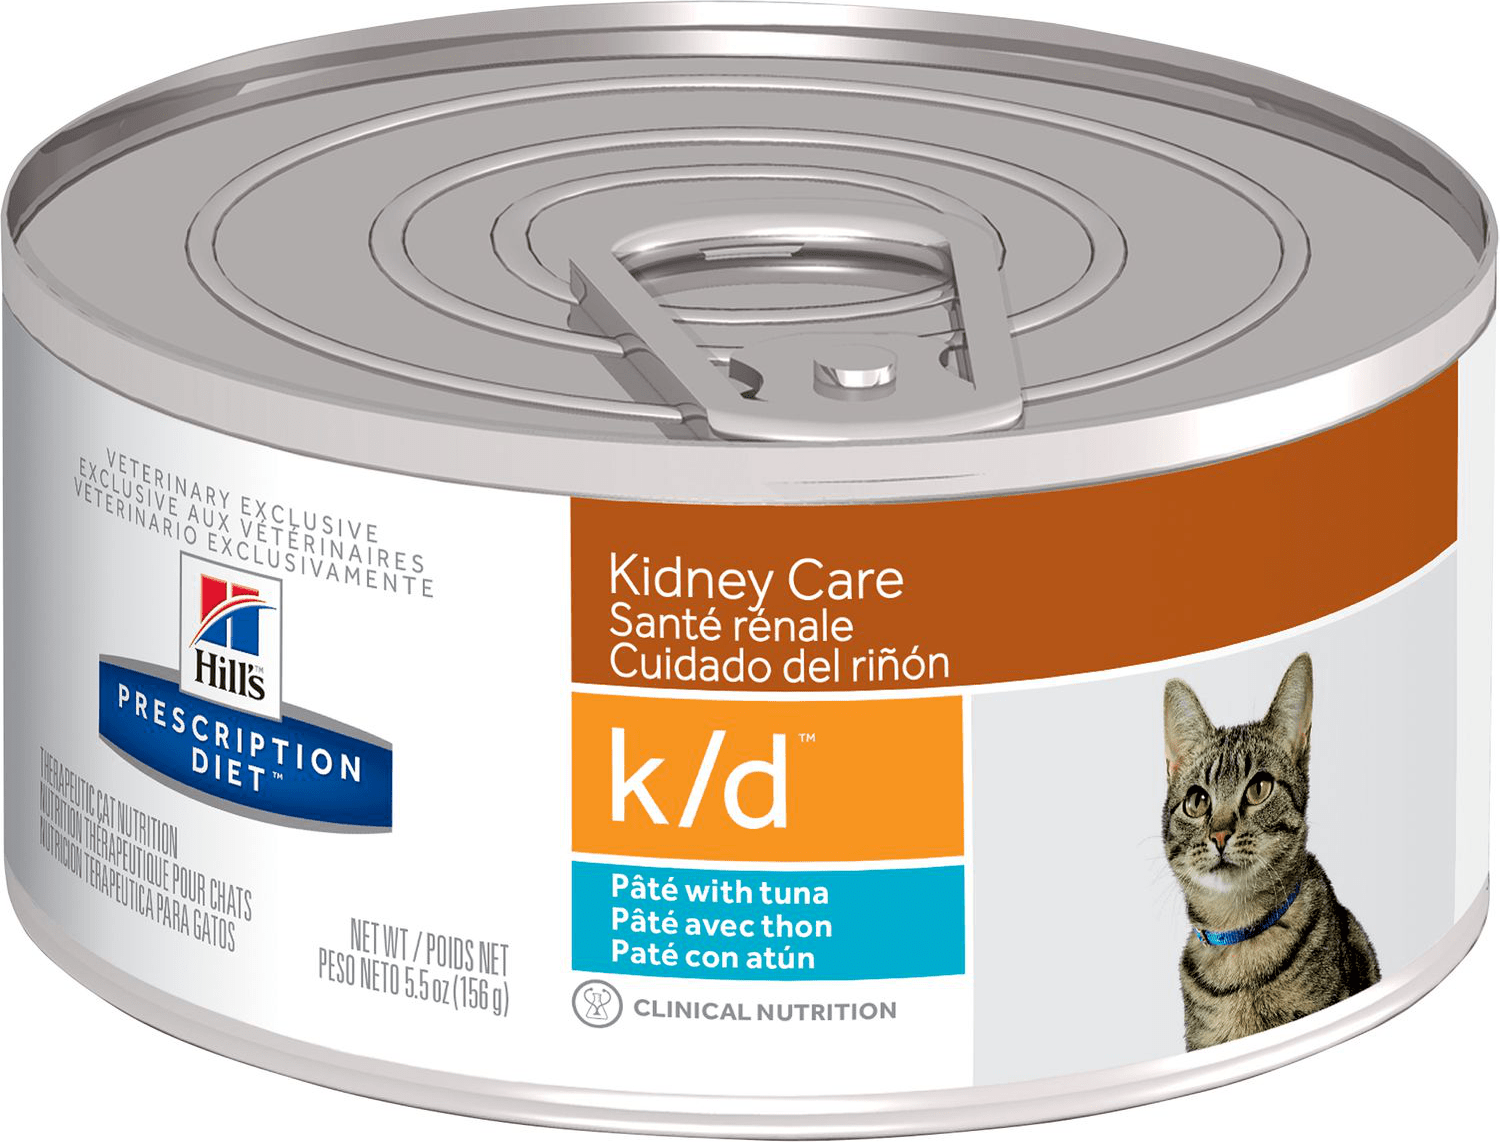 Hill's Prescription Diet K-d Pâté With Tuna